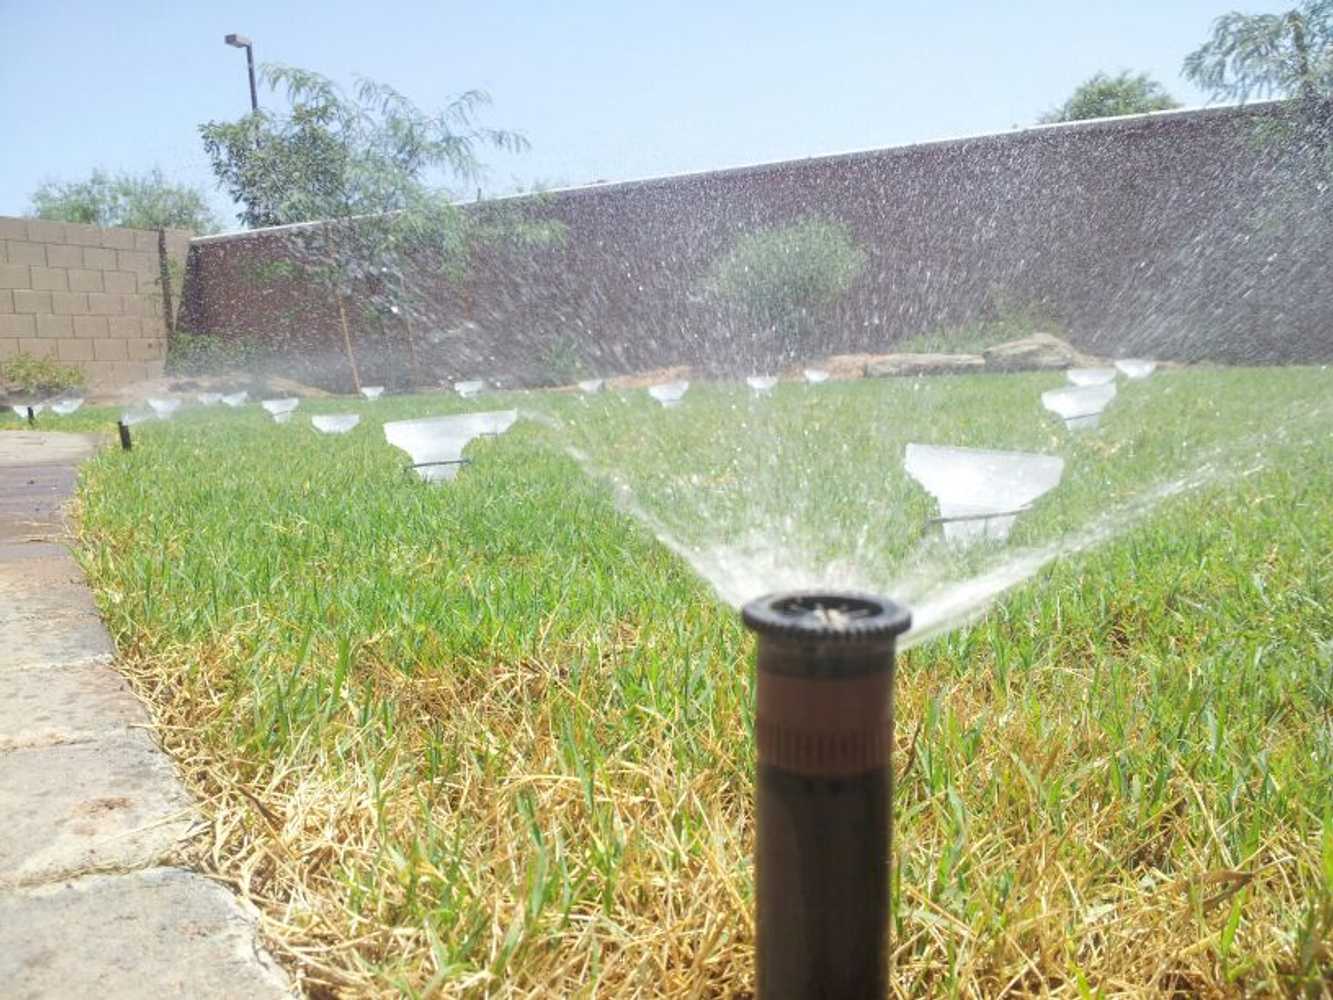 Water Wise Sprinkler Repair Llc Project